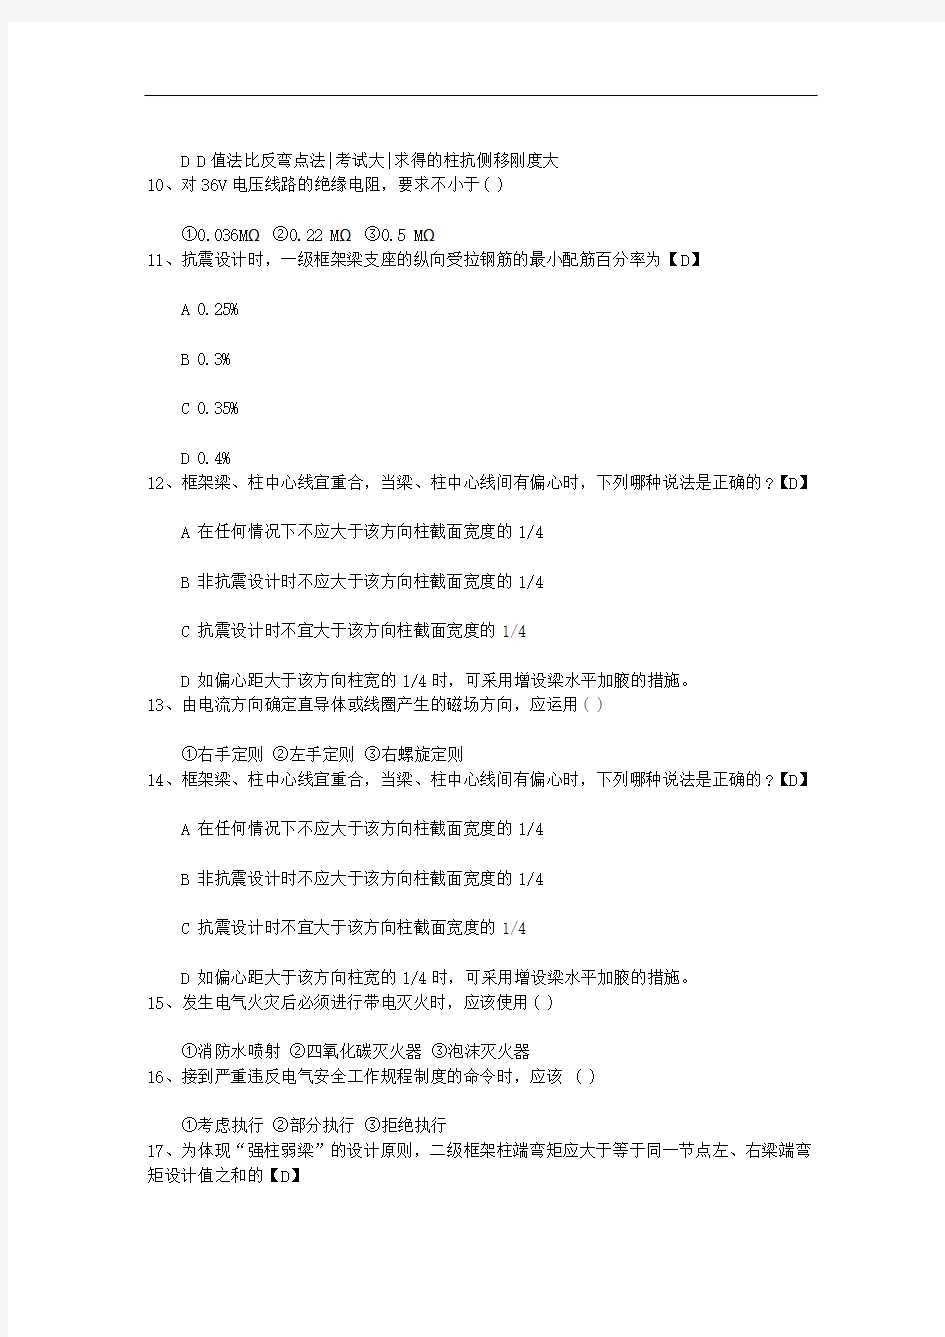 2015年广东省第一批二级注册结构工程师注册人员审查意见的公示每日一练(11月18日)